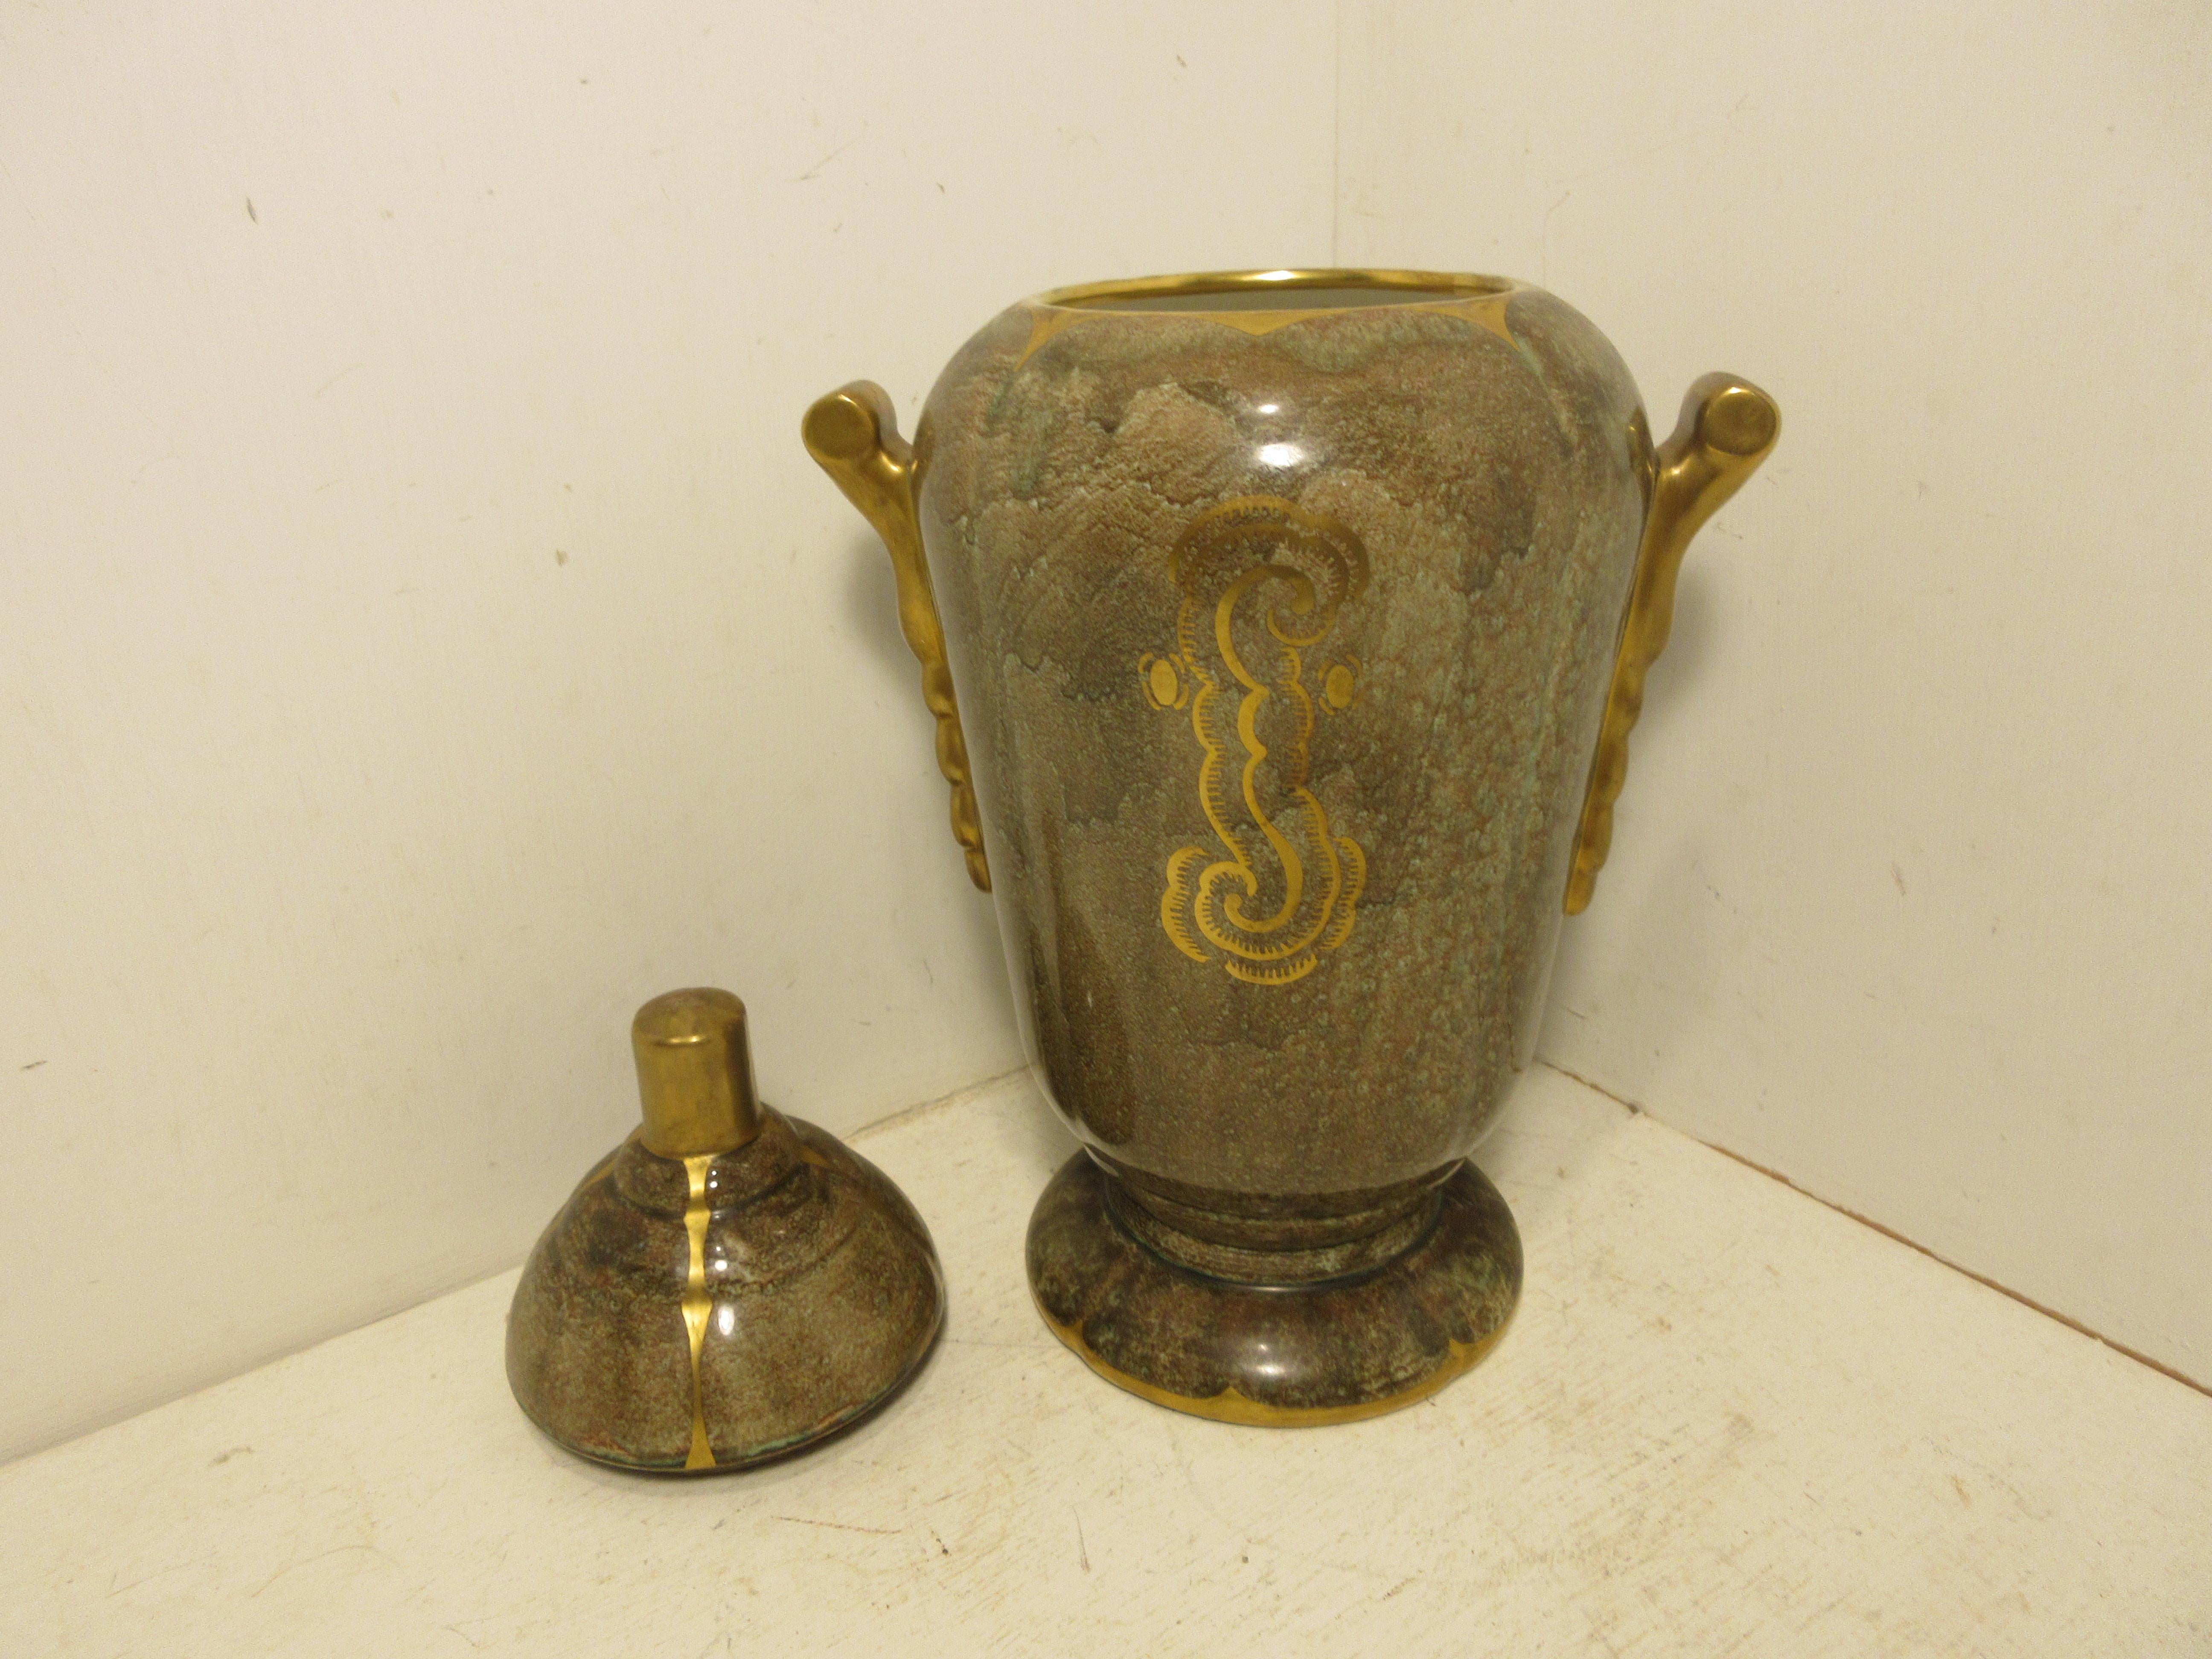 Dies ist eine handgefertigte seltene schwedische Art Deco Keramik Urne in hellbraun und Goldglanz Glasur Hand mit Gold verziert von der schwedischen Keramik-Künstler Josef Ekberg gemacht. Zu dieser Zeit war er einer der Top-Keramikkünstler